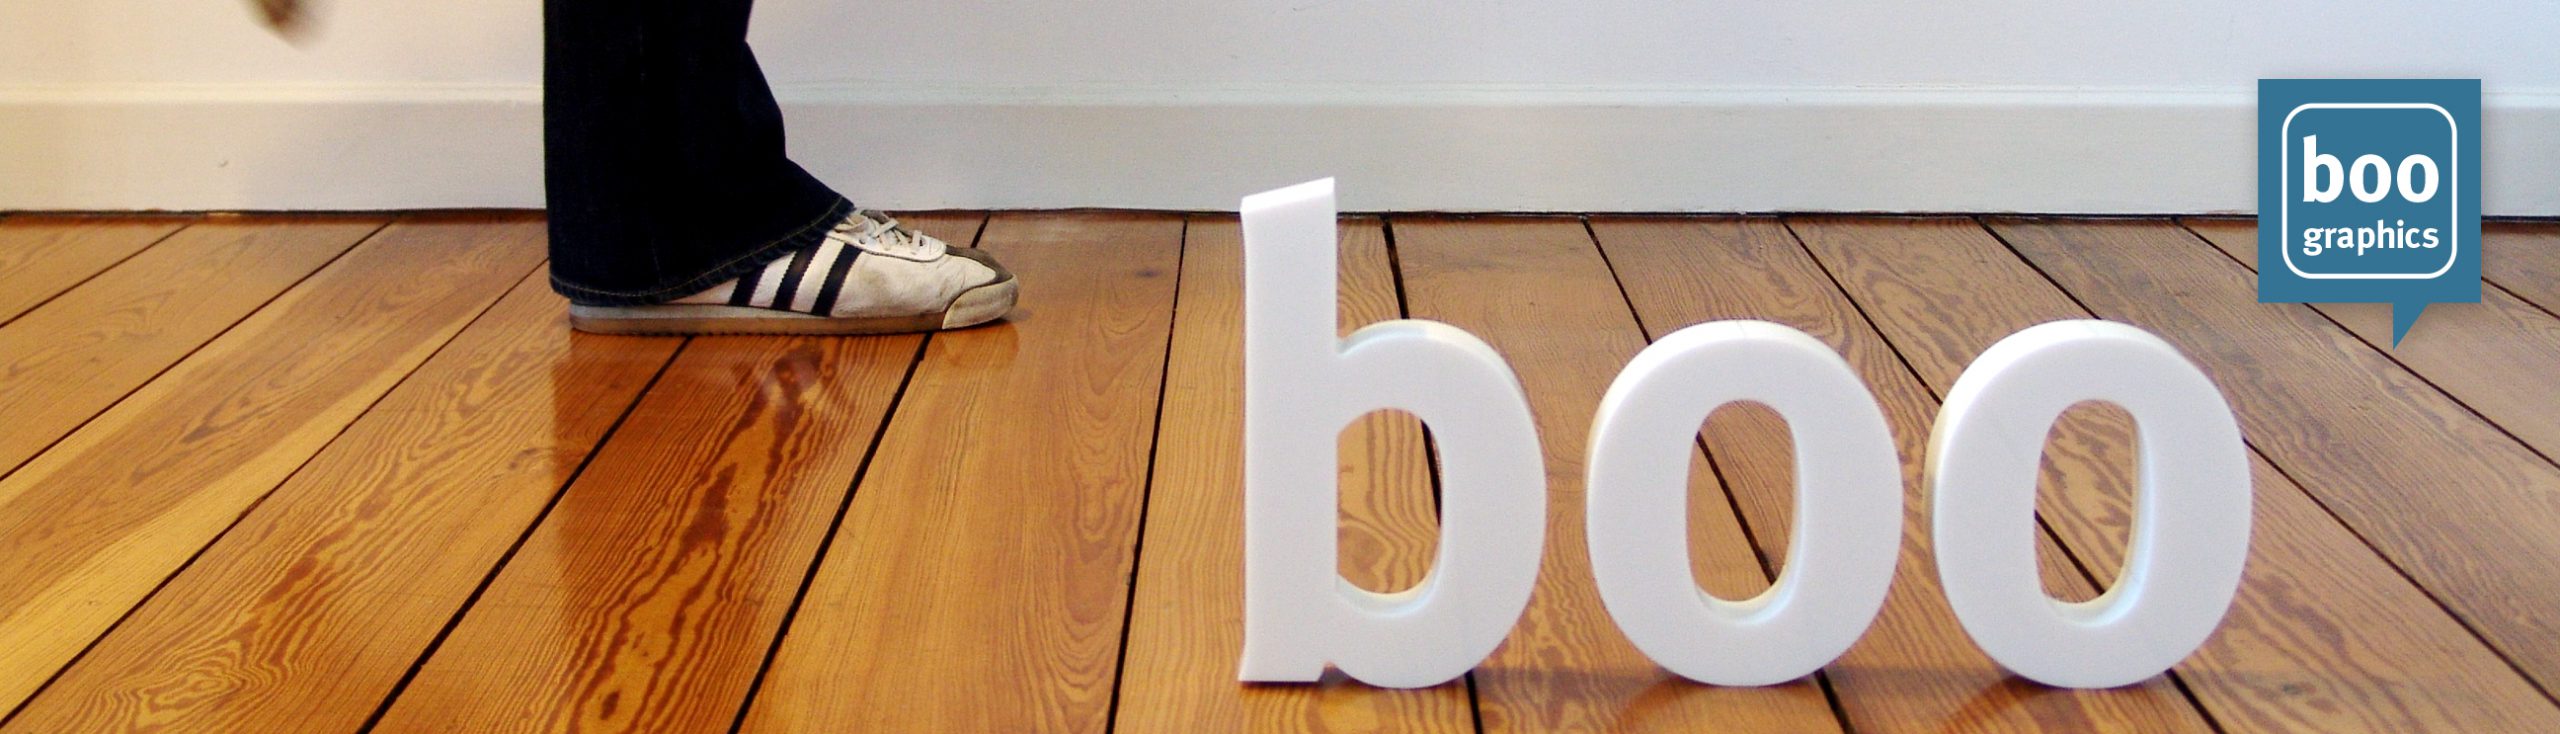 boo graphics Buchstaben Füße